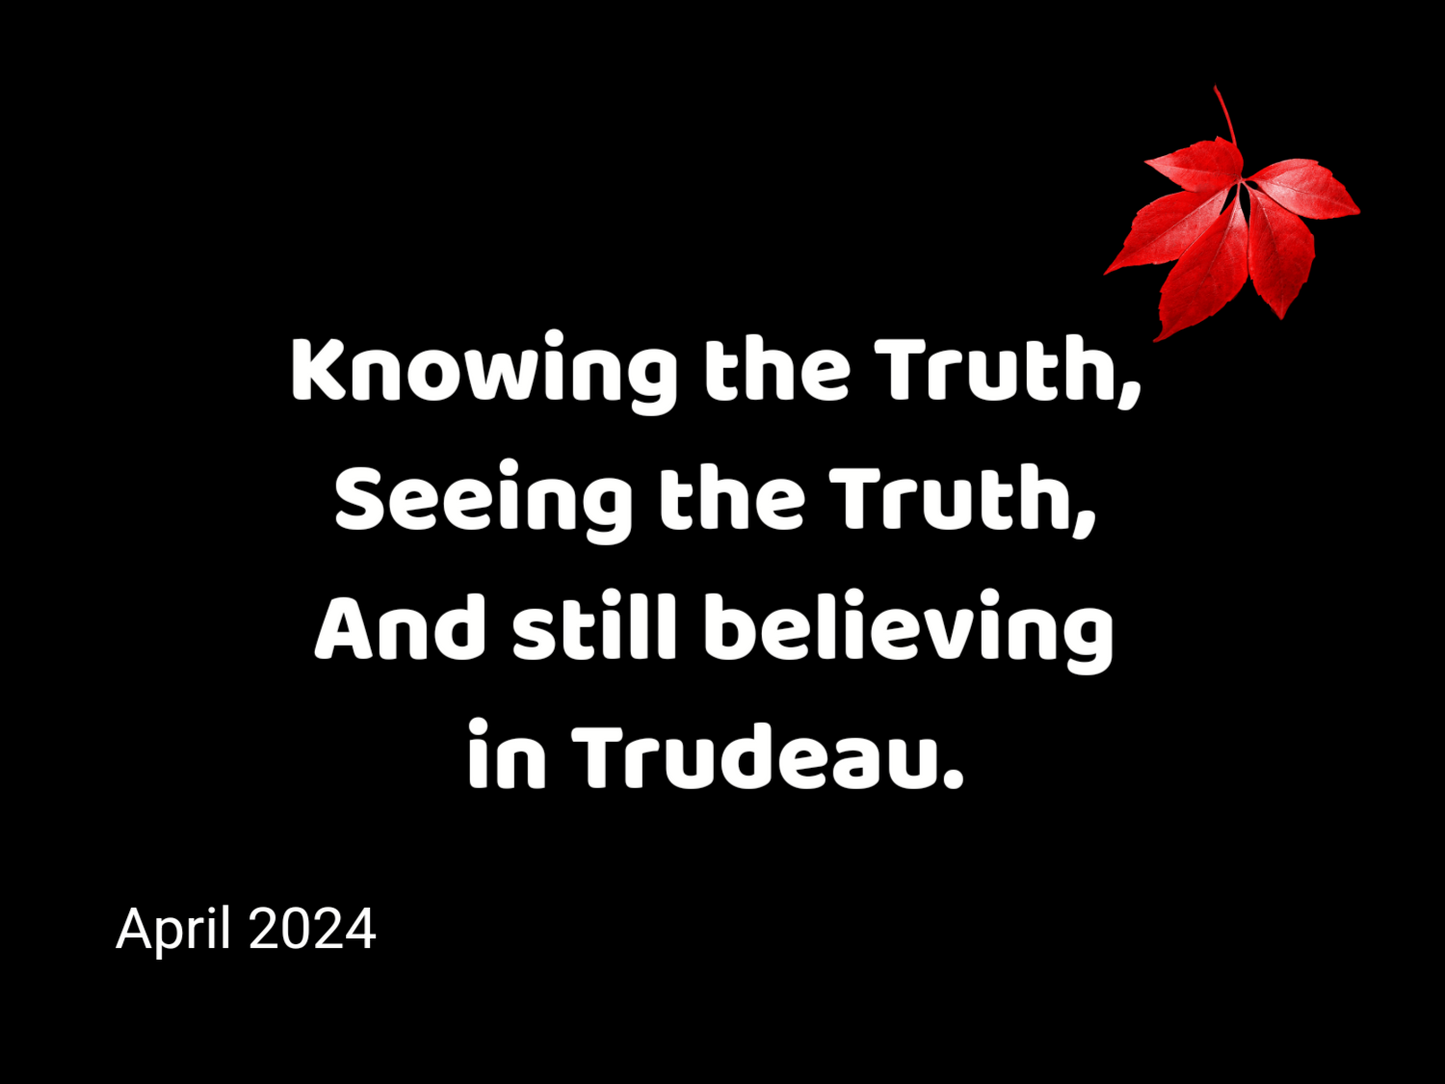 A Fuck Trudeau Calendar 2024